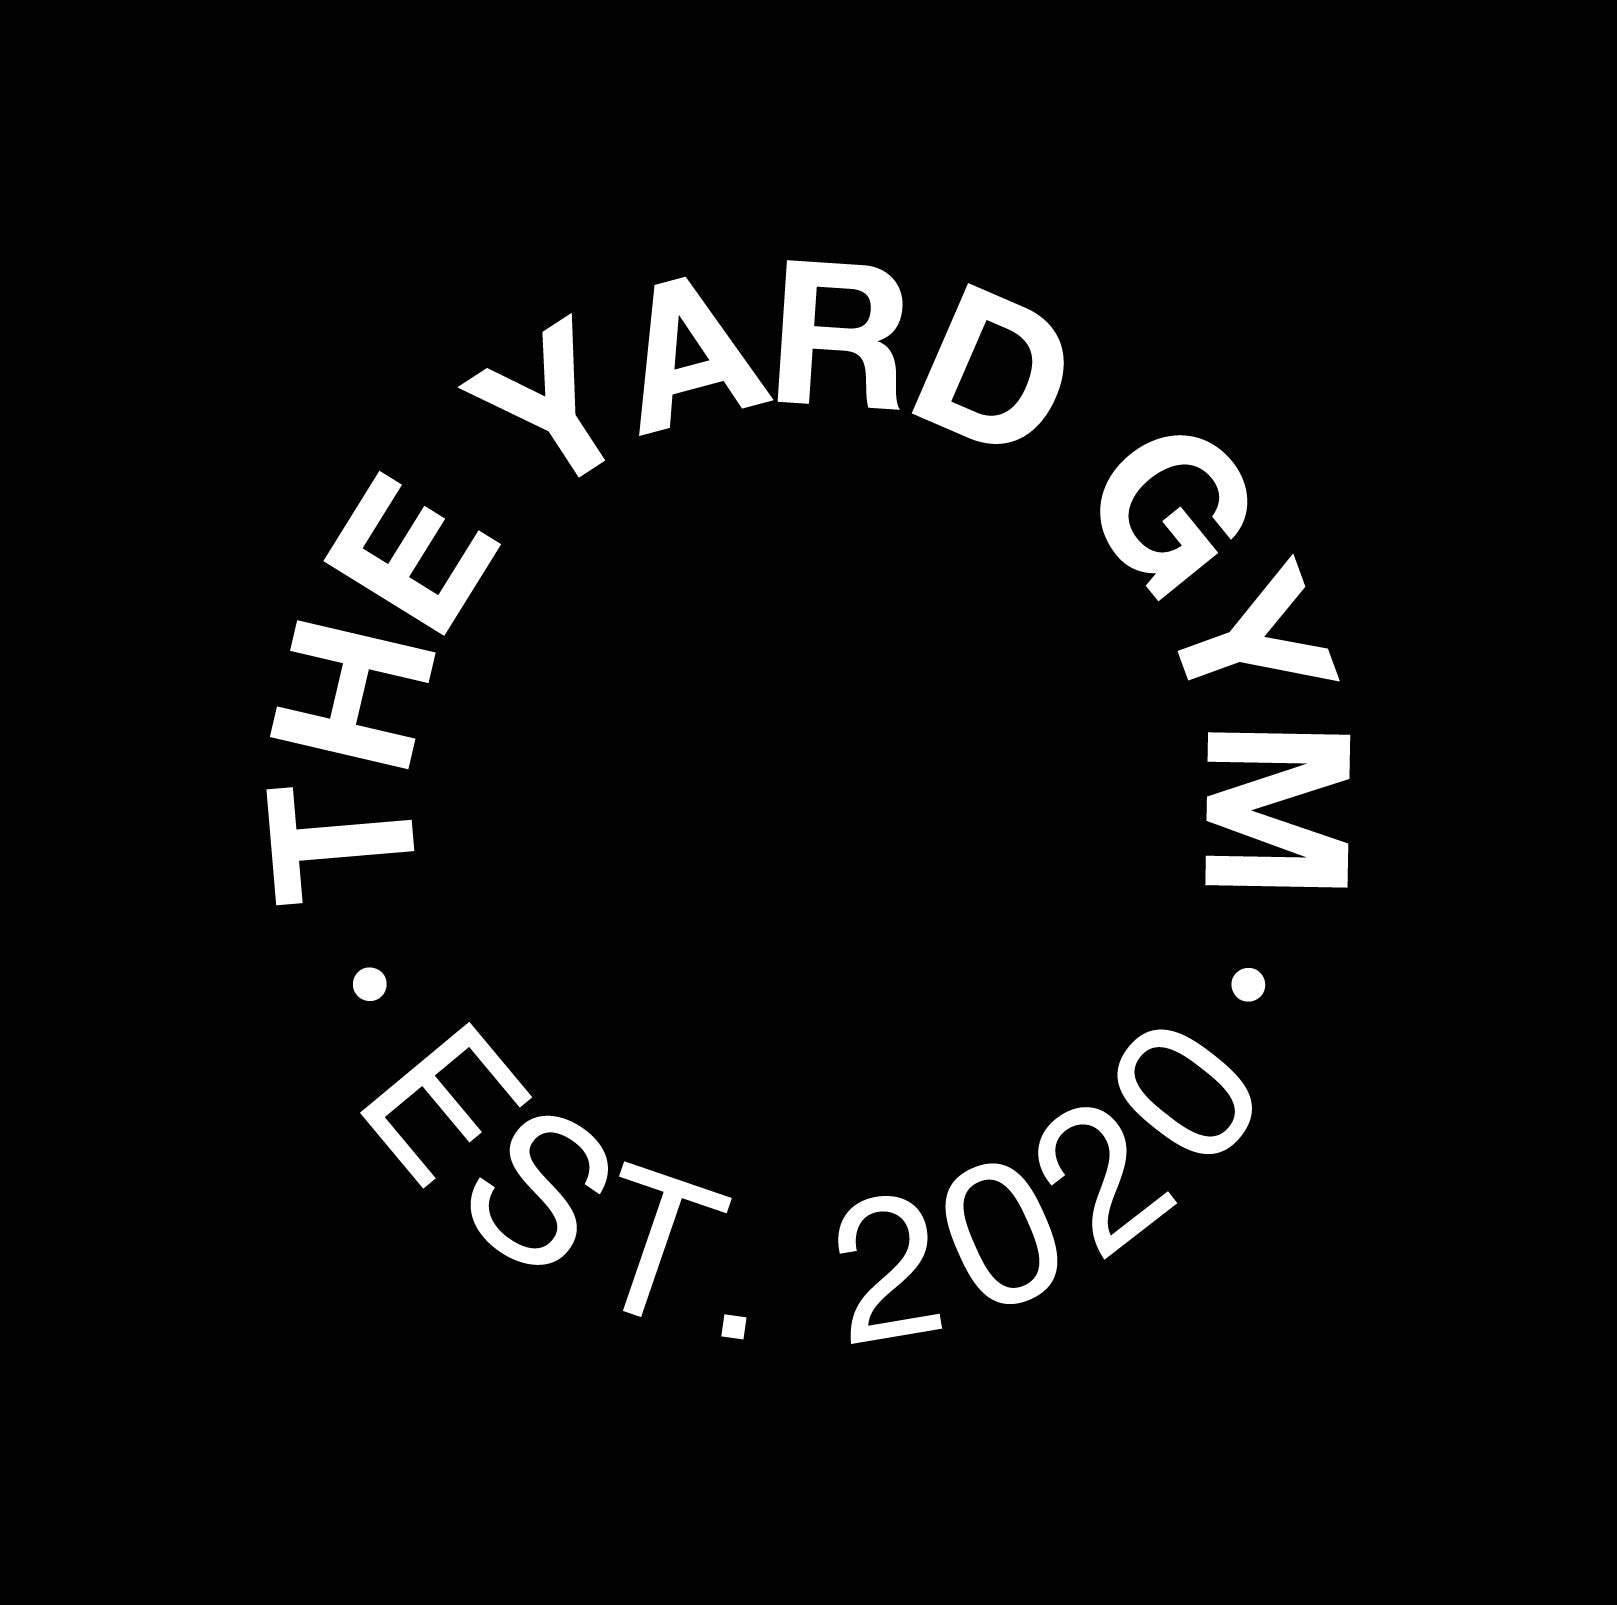 THE YARD GYM